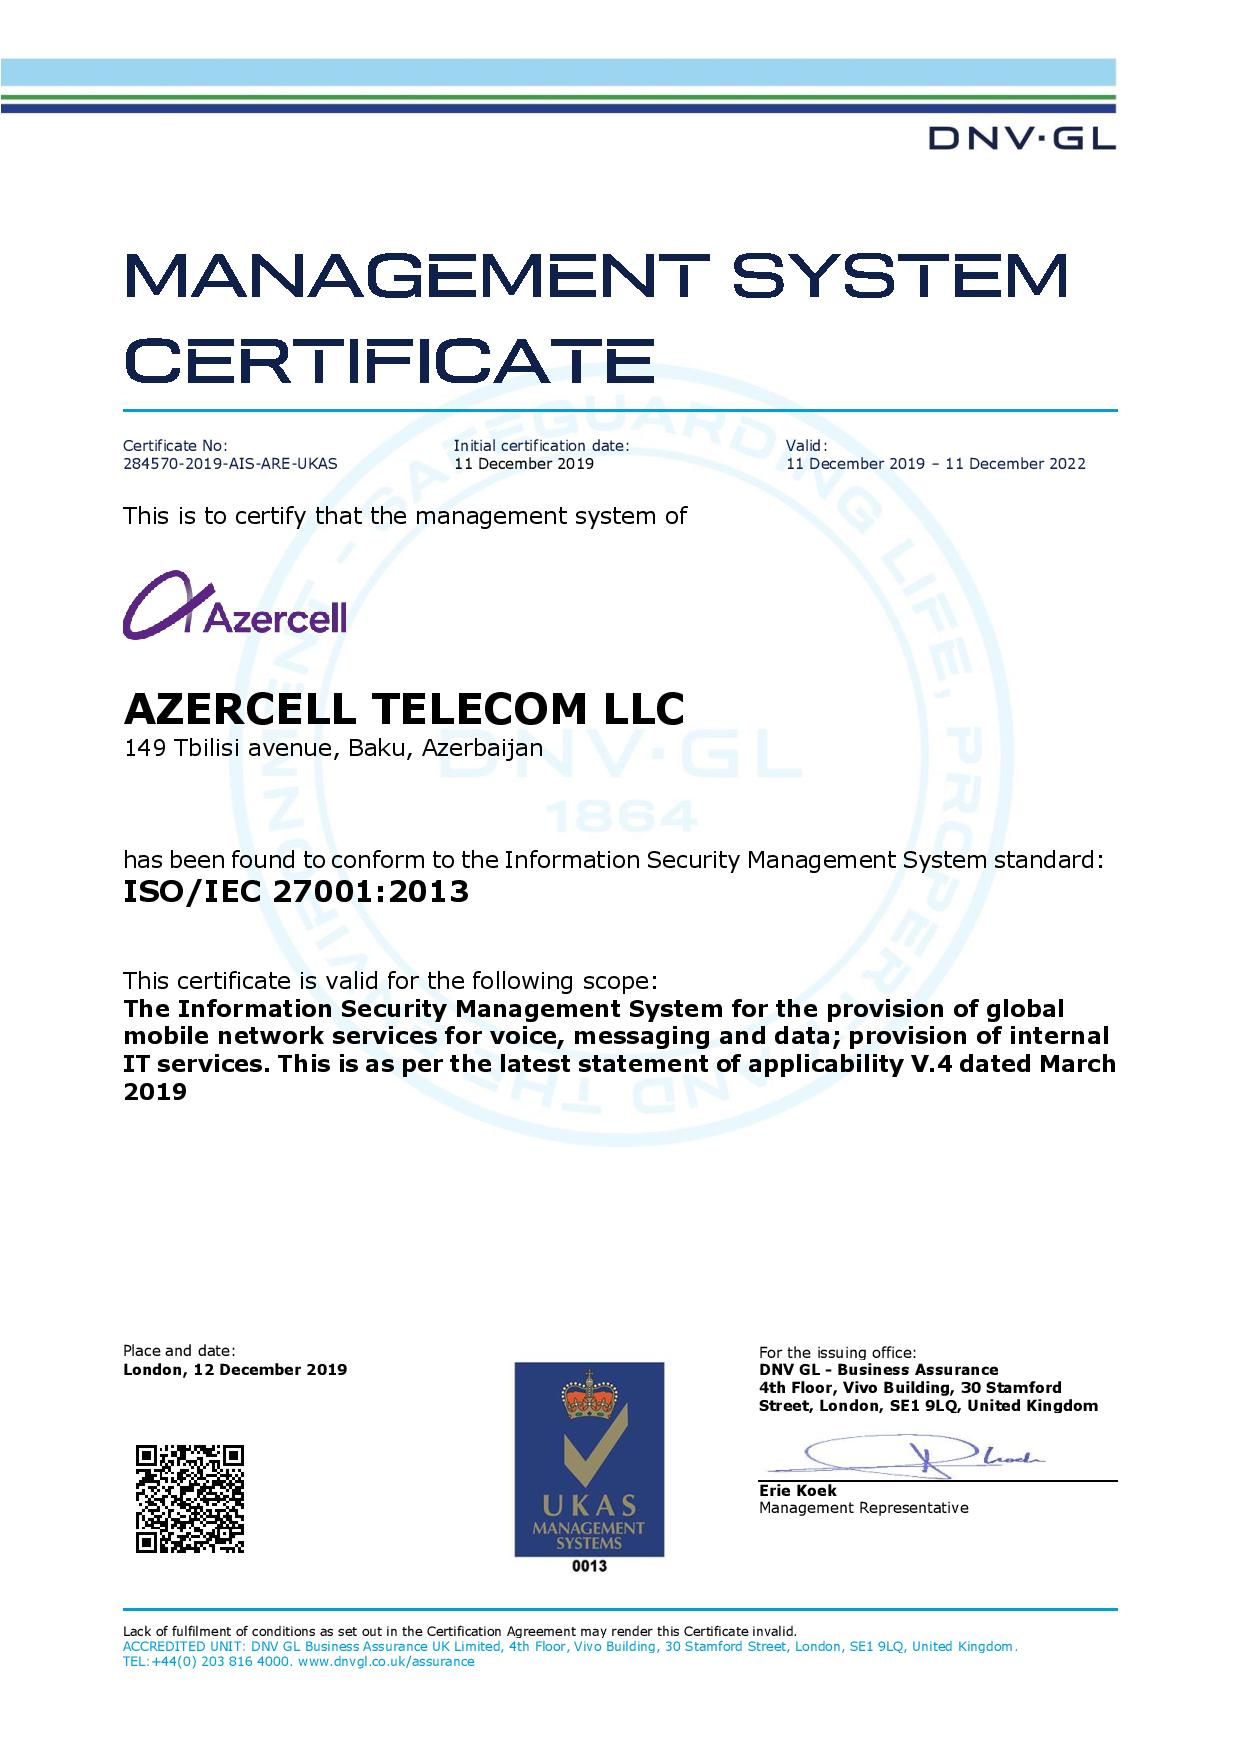 Azercell Azərbaycanda İSO/IEC 27001 Beynəlxalq İnformasiya Təhlükəsizliyi Standartına uyğunluq sertifikatını alan ilk mobil operator oldu